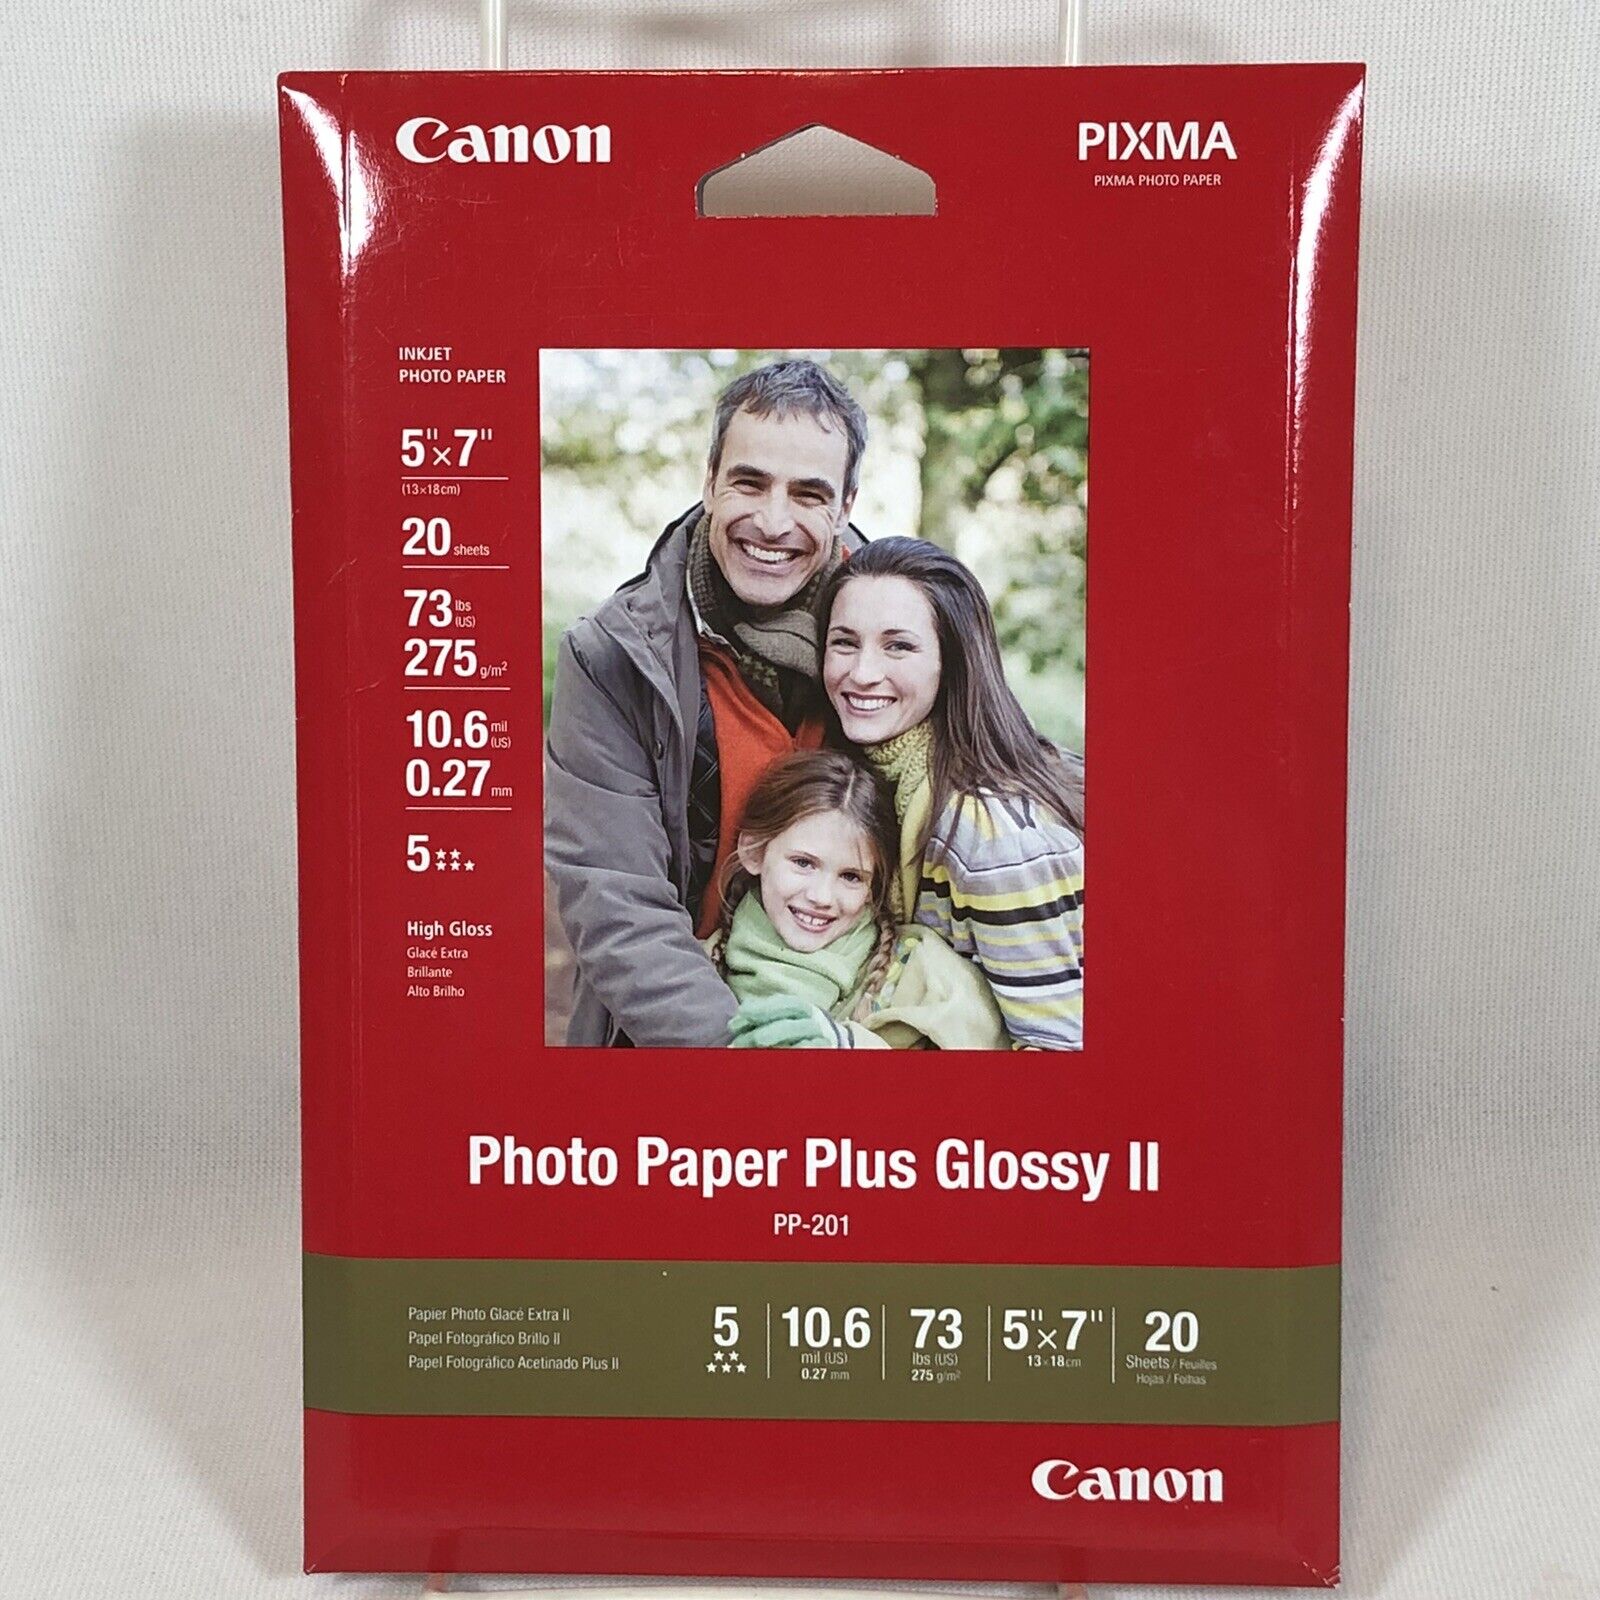 Canon PIXMA Photo Paper Plus Glossy II 5